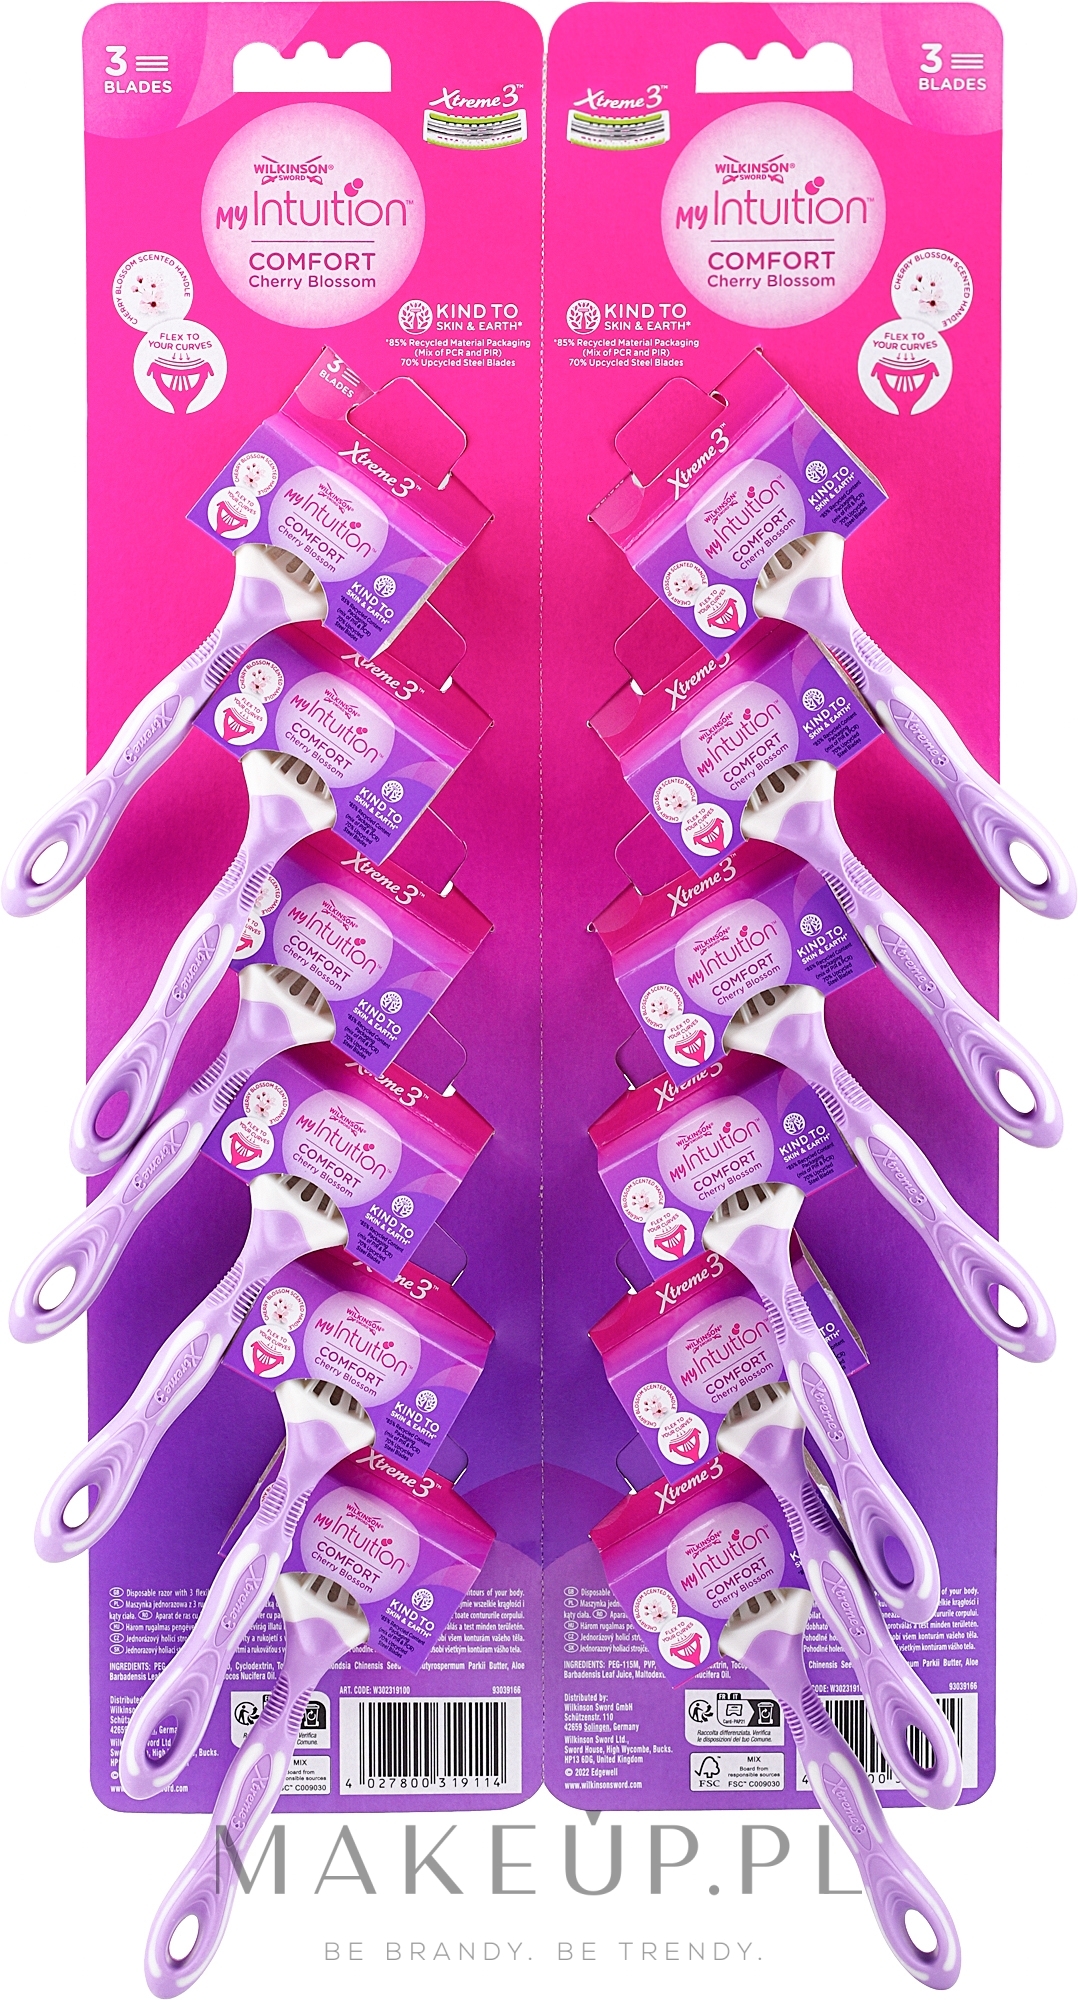 Jednorazowe maszynki do golenia dla kobiet z trzema ostrzami, 12 szt. - Wilkinson Sword Xtreme 3 My Intuition Comfort Cherry Blossom  — Zdjęcie 12 szt.